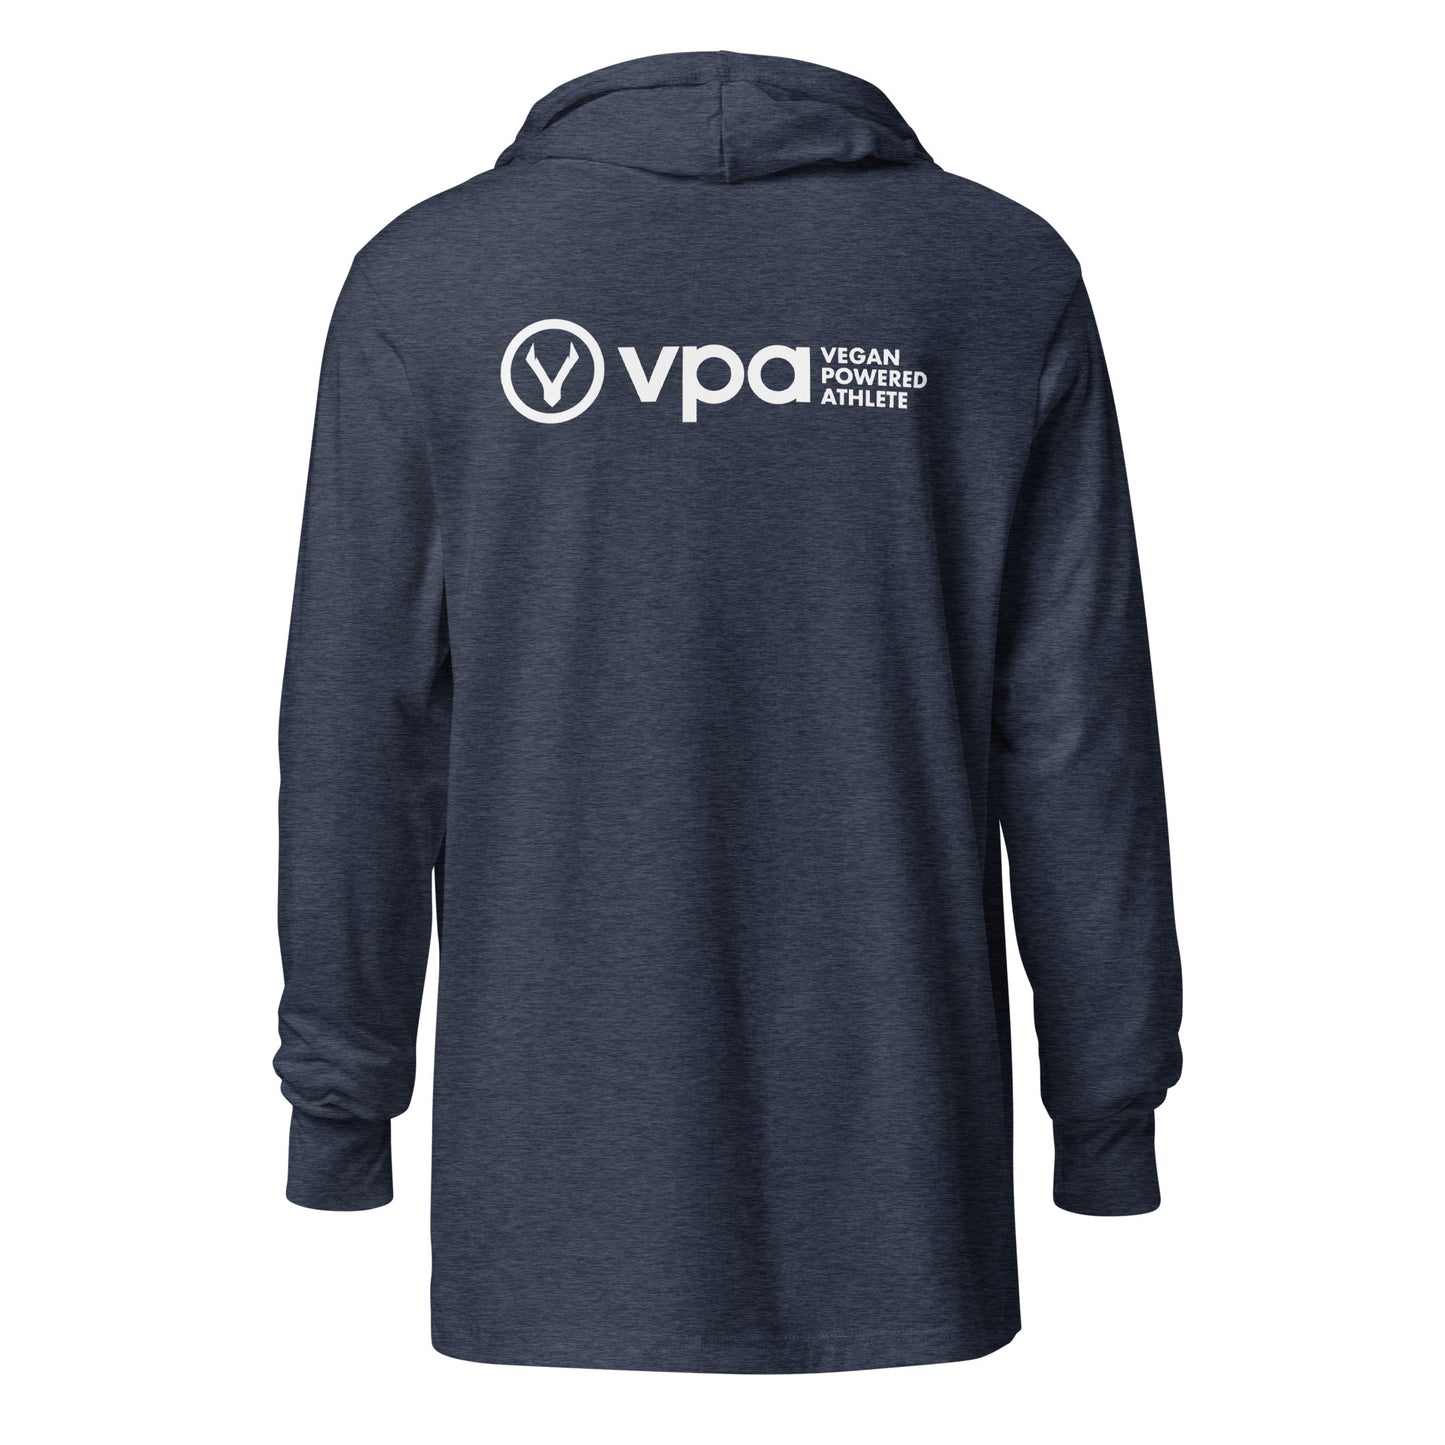 VPA Vegan Powered Athlete Hooded long-sleeve tee